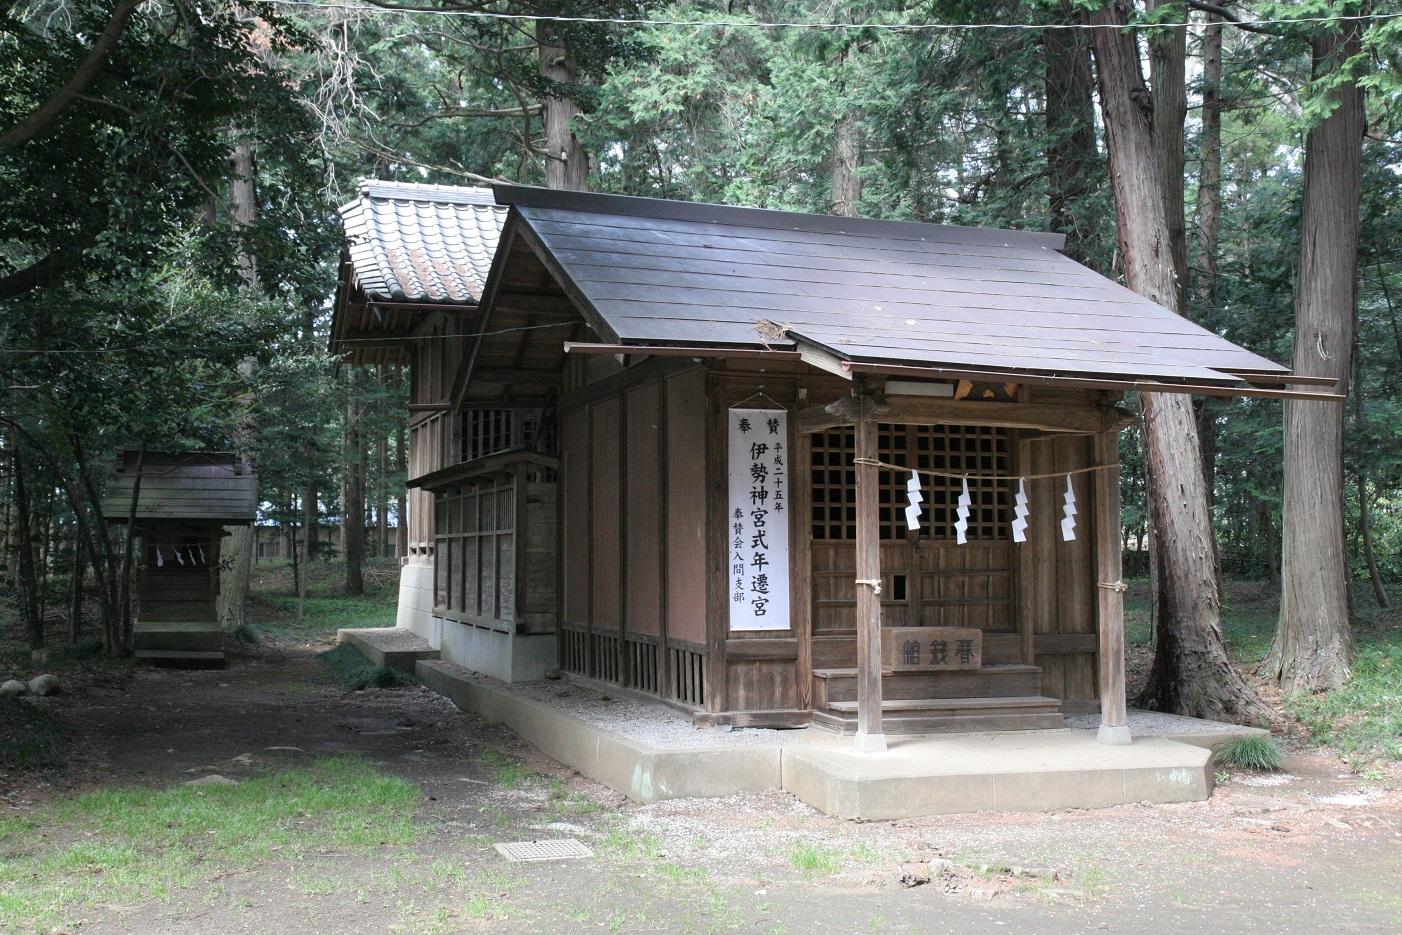 周りが木々に囲まれており、正面の両脇の柱に紐が結ばれ4枚の白い紙垂がつけられている十社神社の外観写真